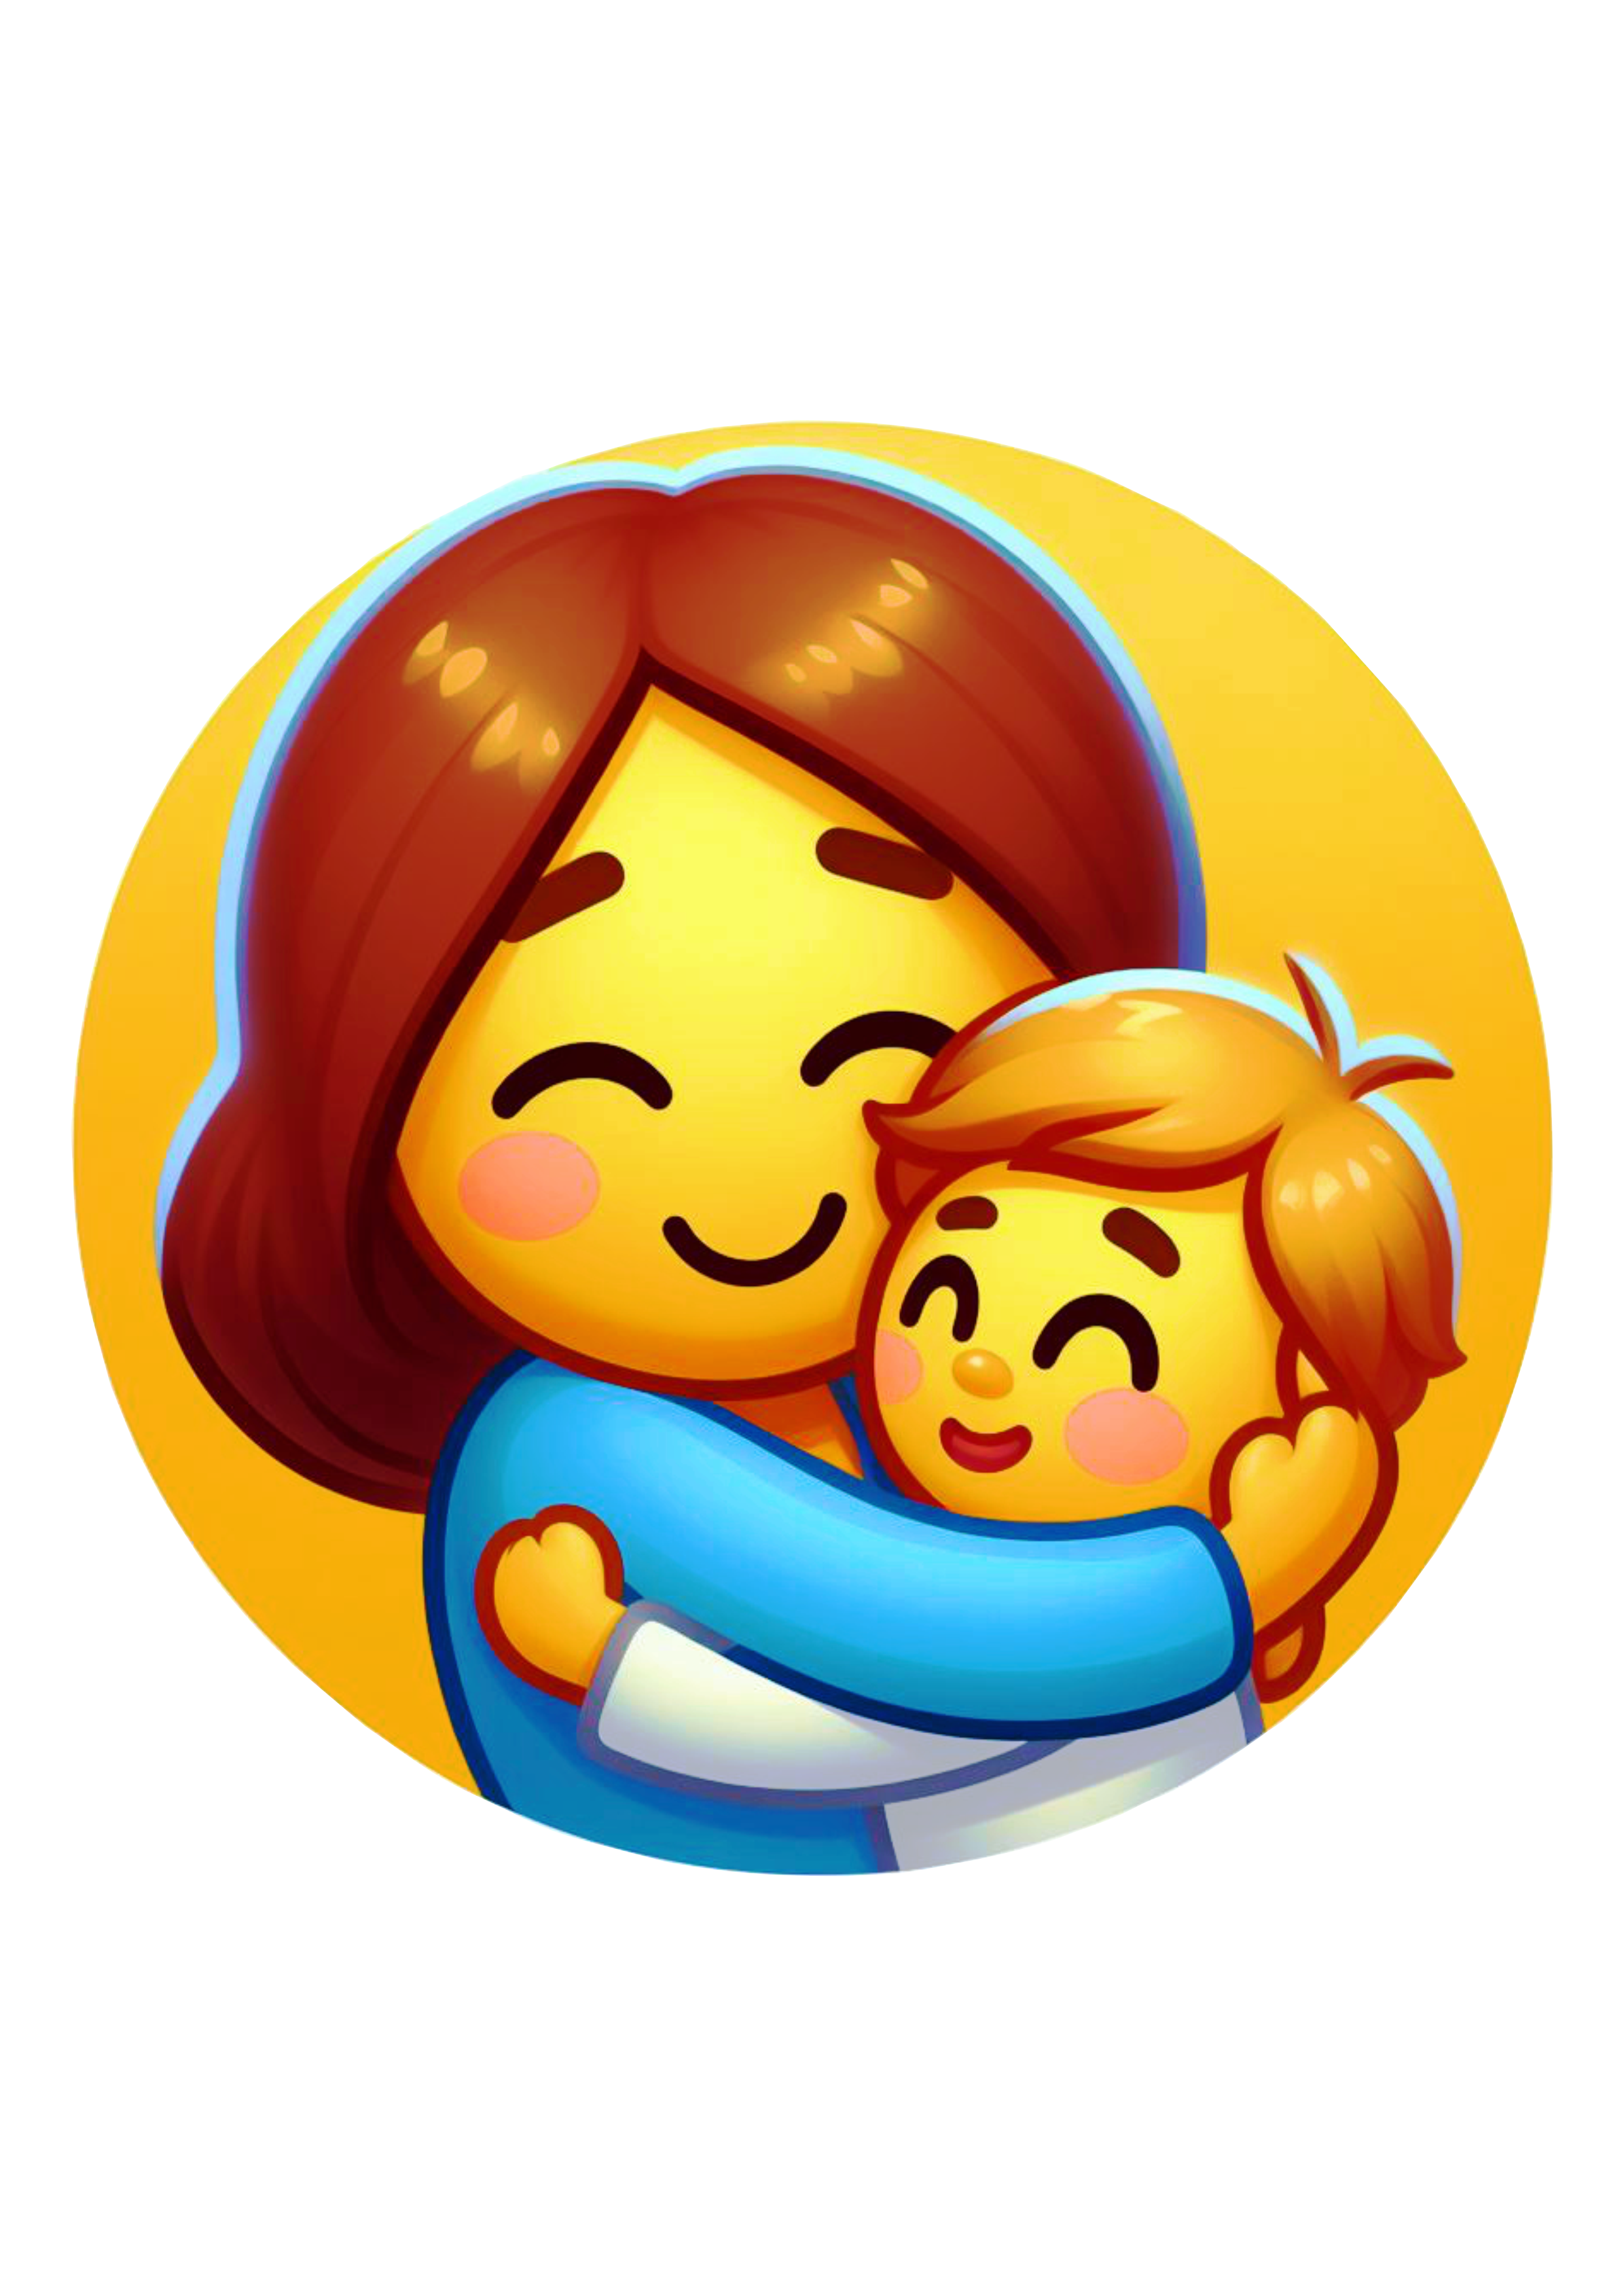 Dia das mães emojis figurinha para redes sociais whatsapp facebook fundo transparente ilustração png